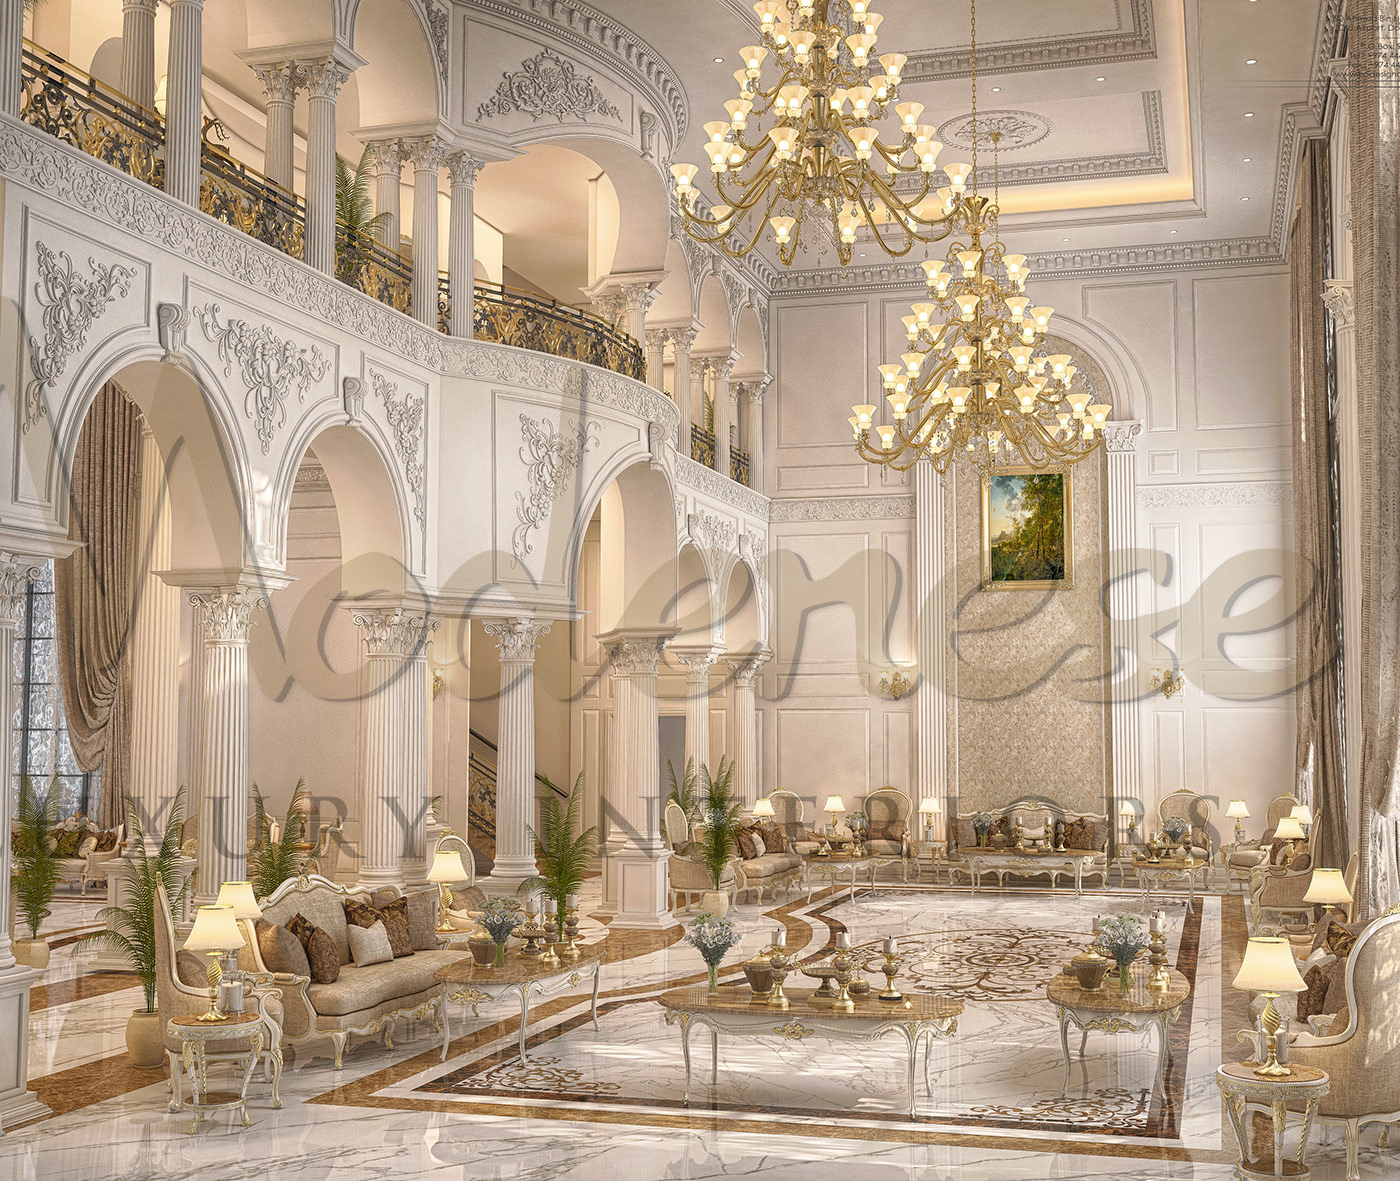 تصميم ديكور داخلي لبيوت كلاسيكية في مكة المكرمة، المملكة العربية السعودية